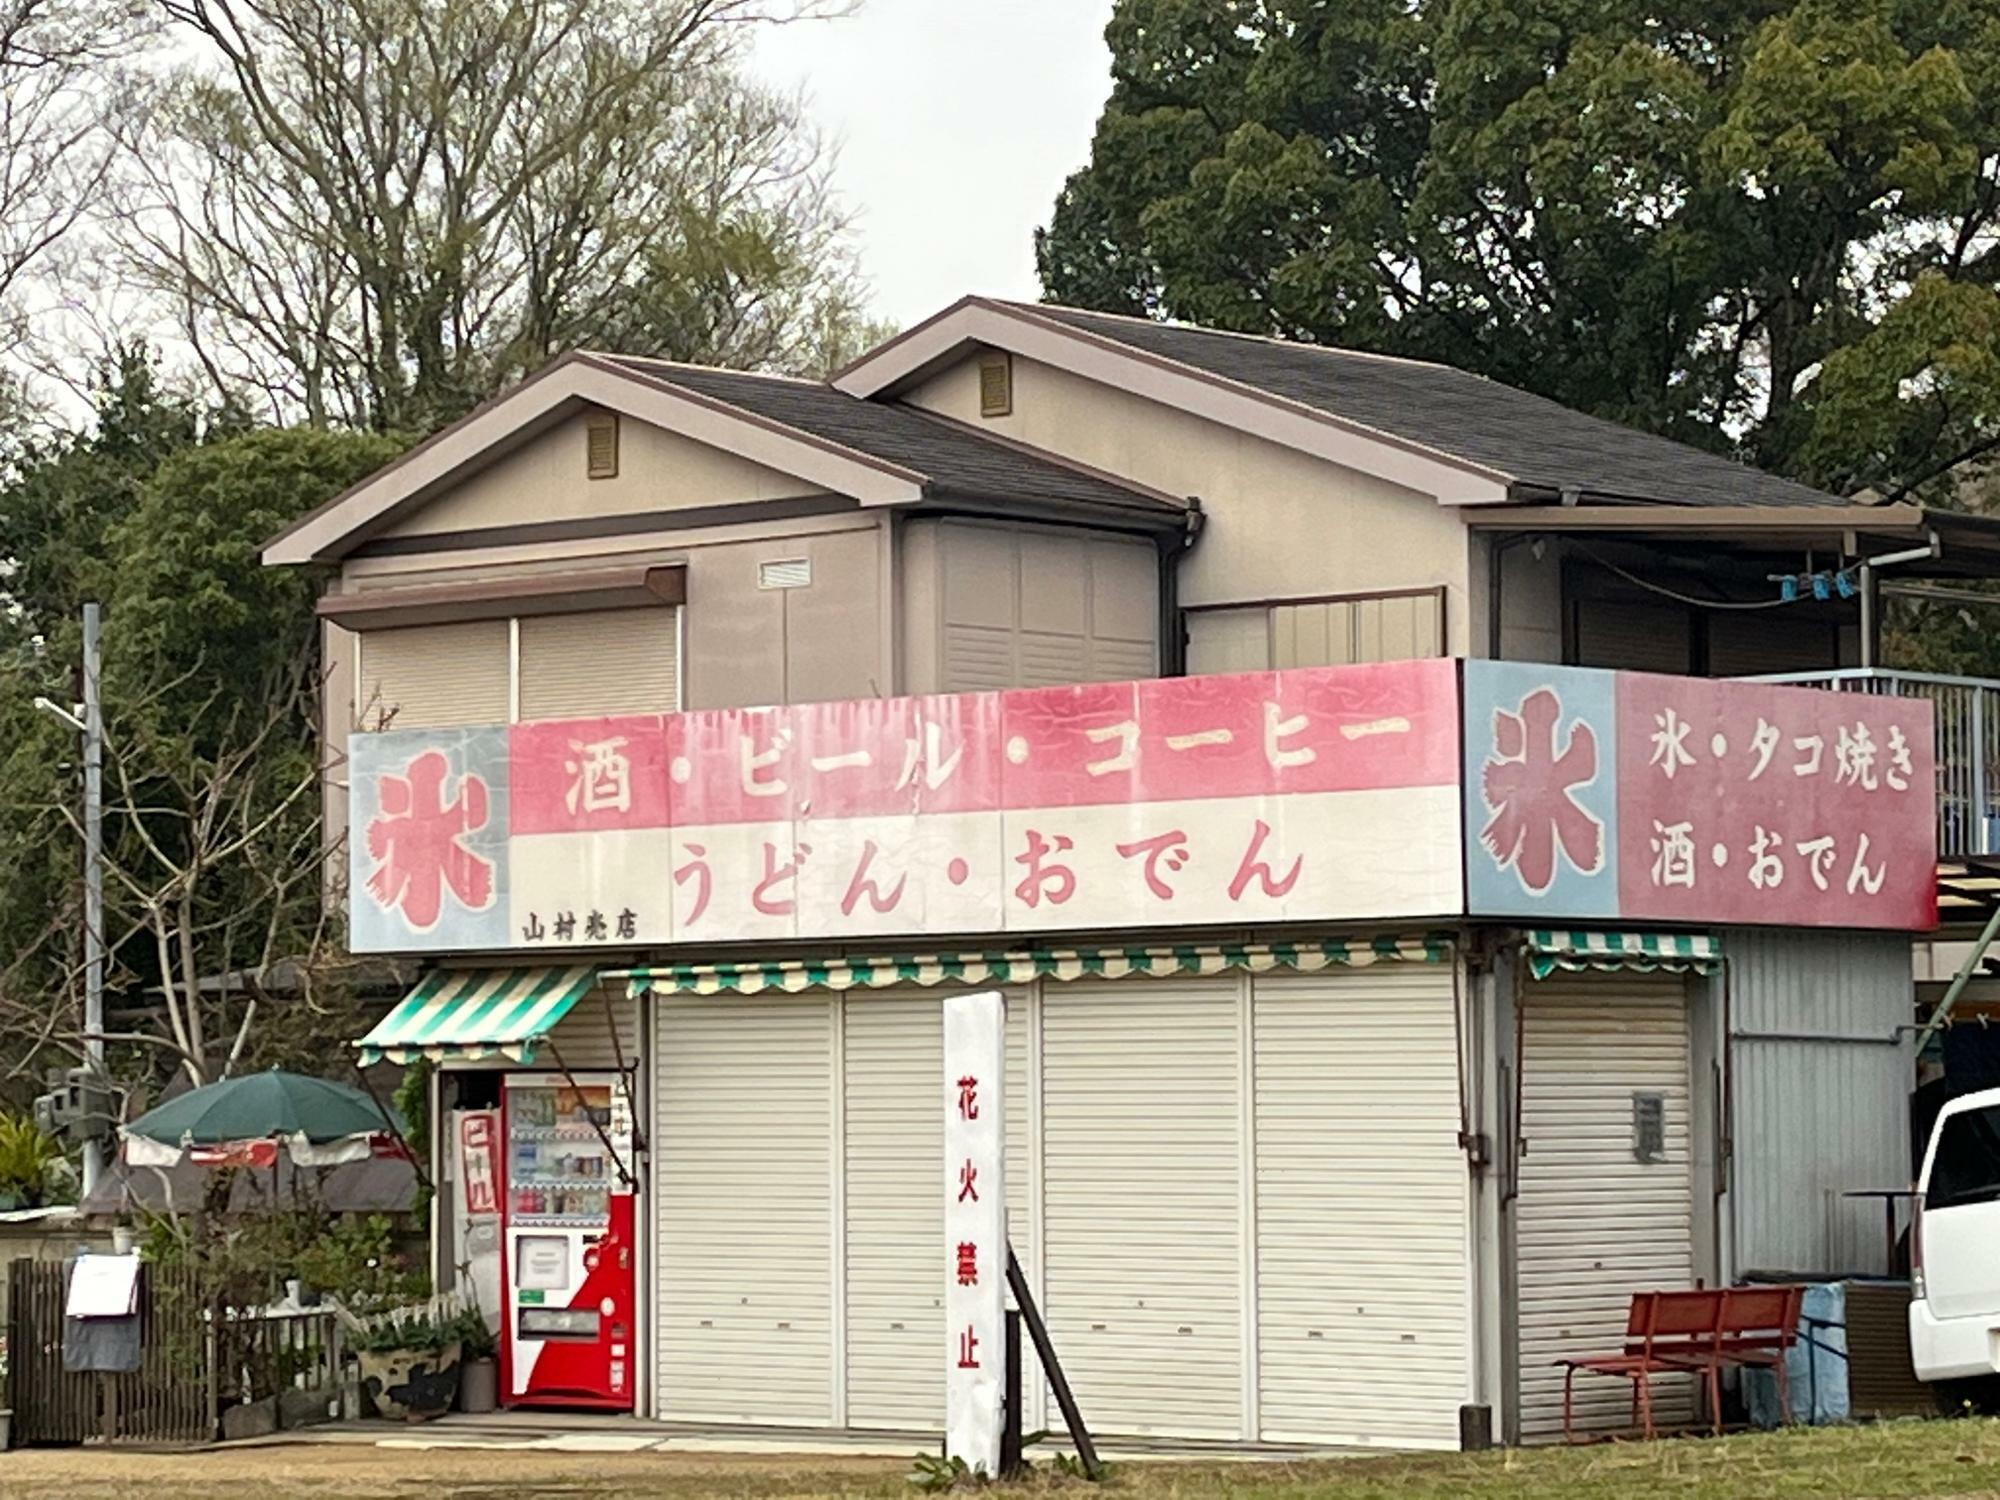 長野公園管理事務所の人の話では、こちらの売店は長野遊園の時代からあるそうです